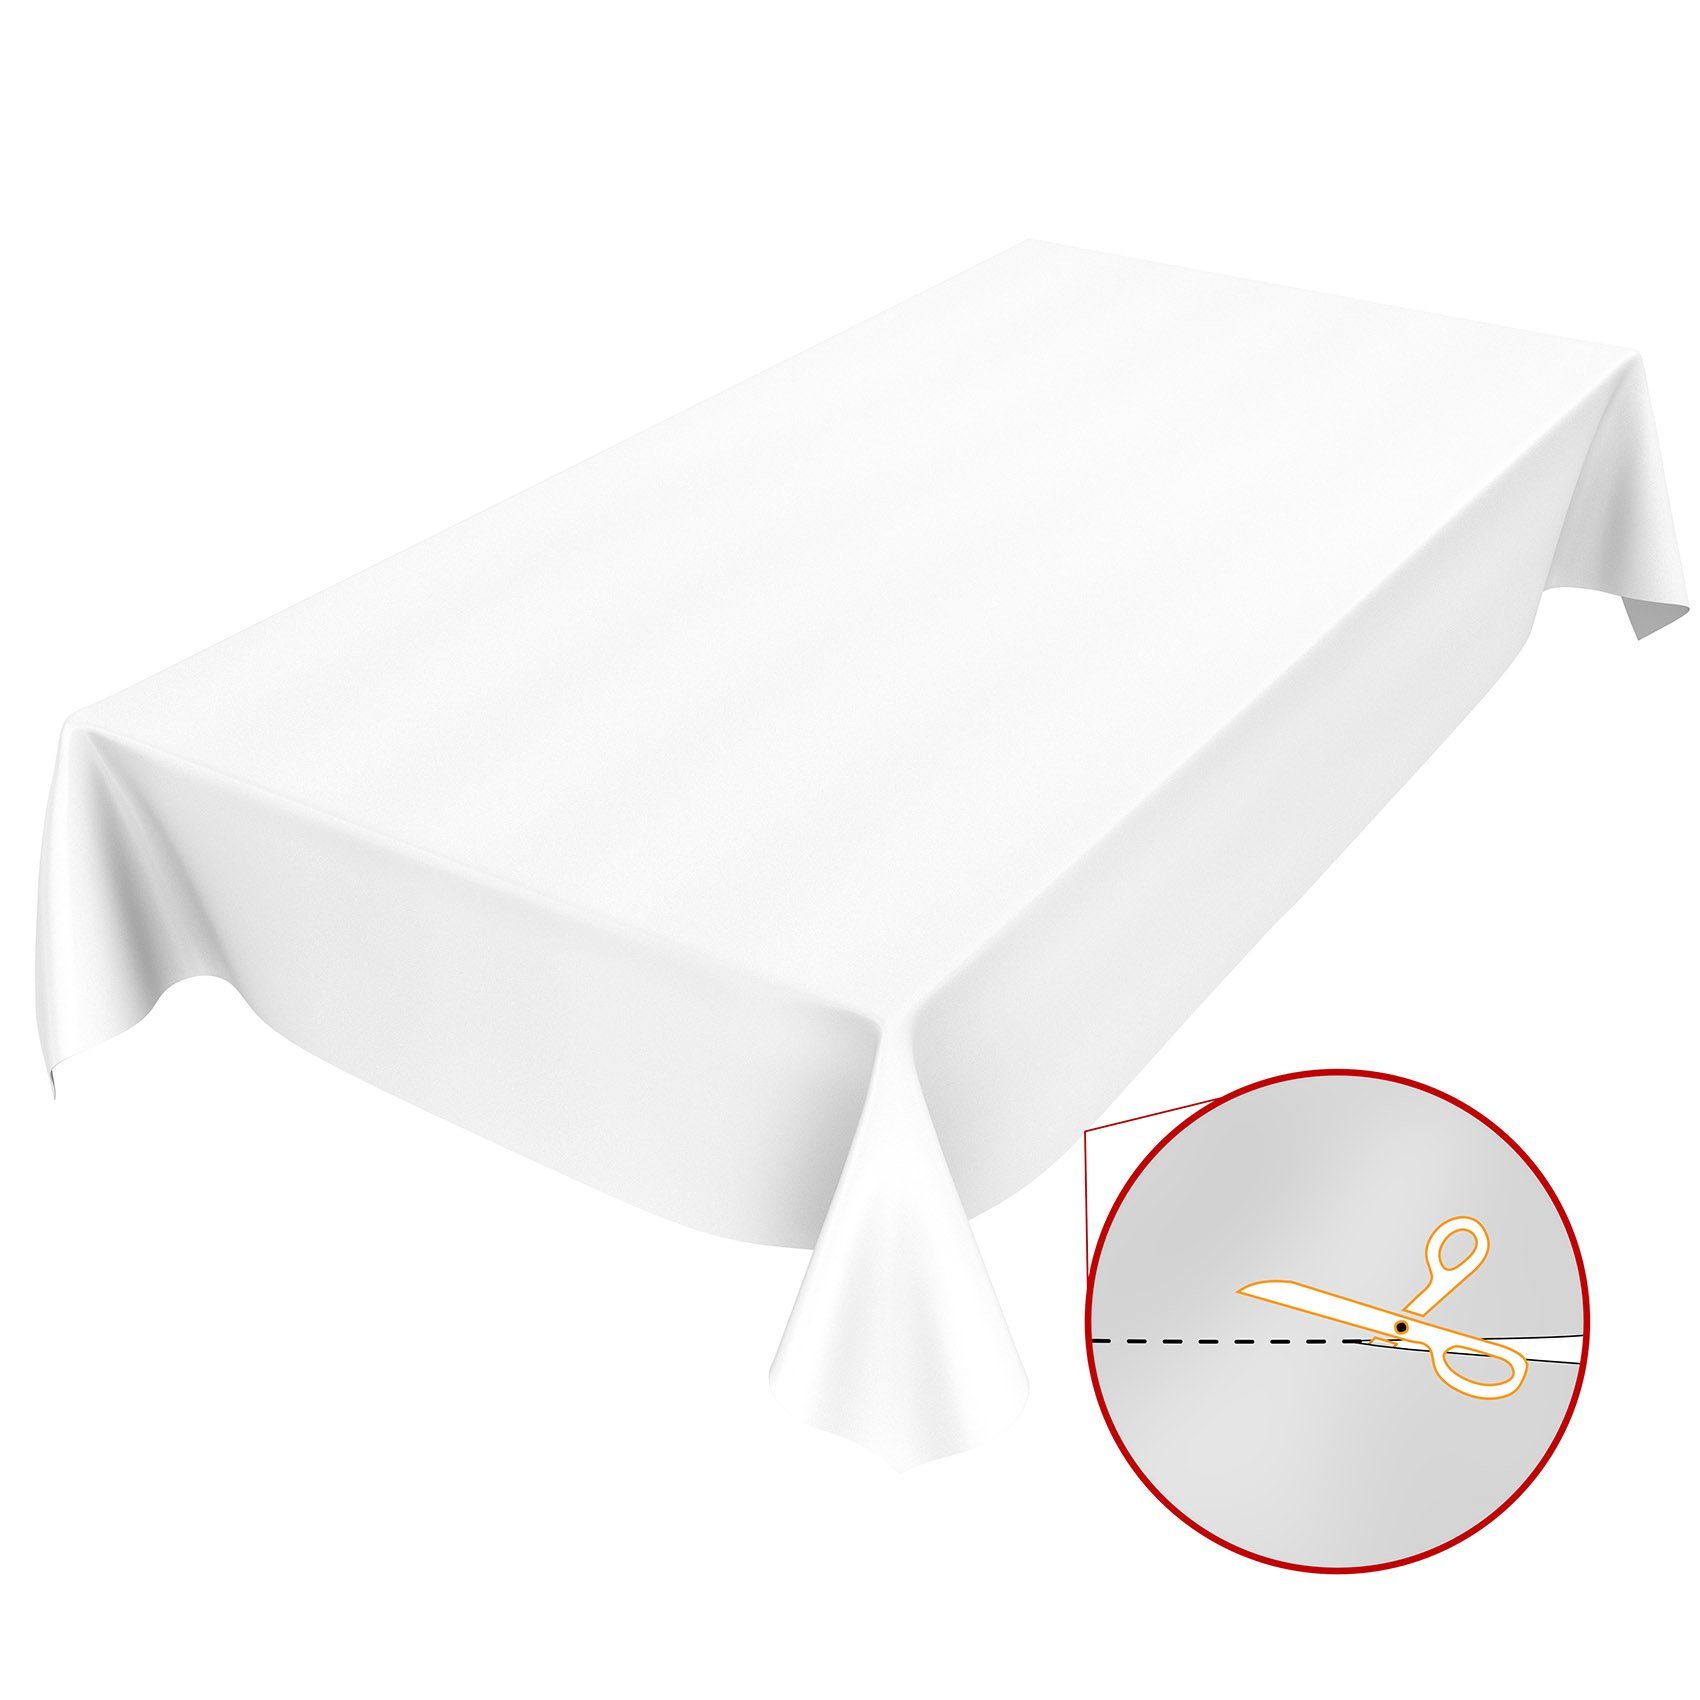 ANRO Tischdecke Tischdecke Wachstuch Glatt Breite Robust 140, Wasserabweisend Einfarbig Weiß